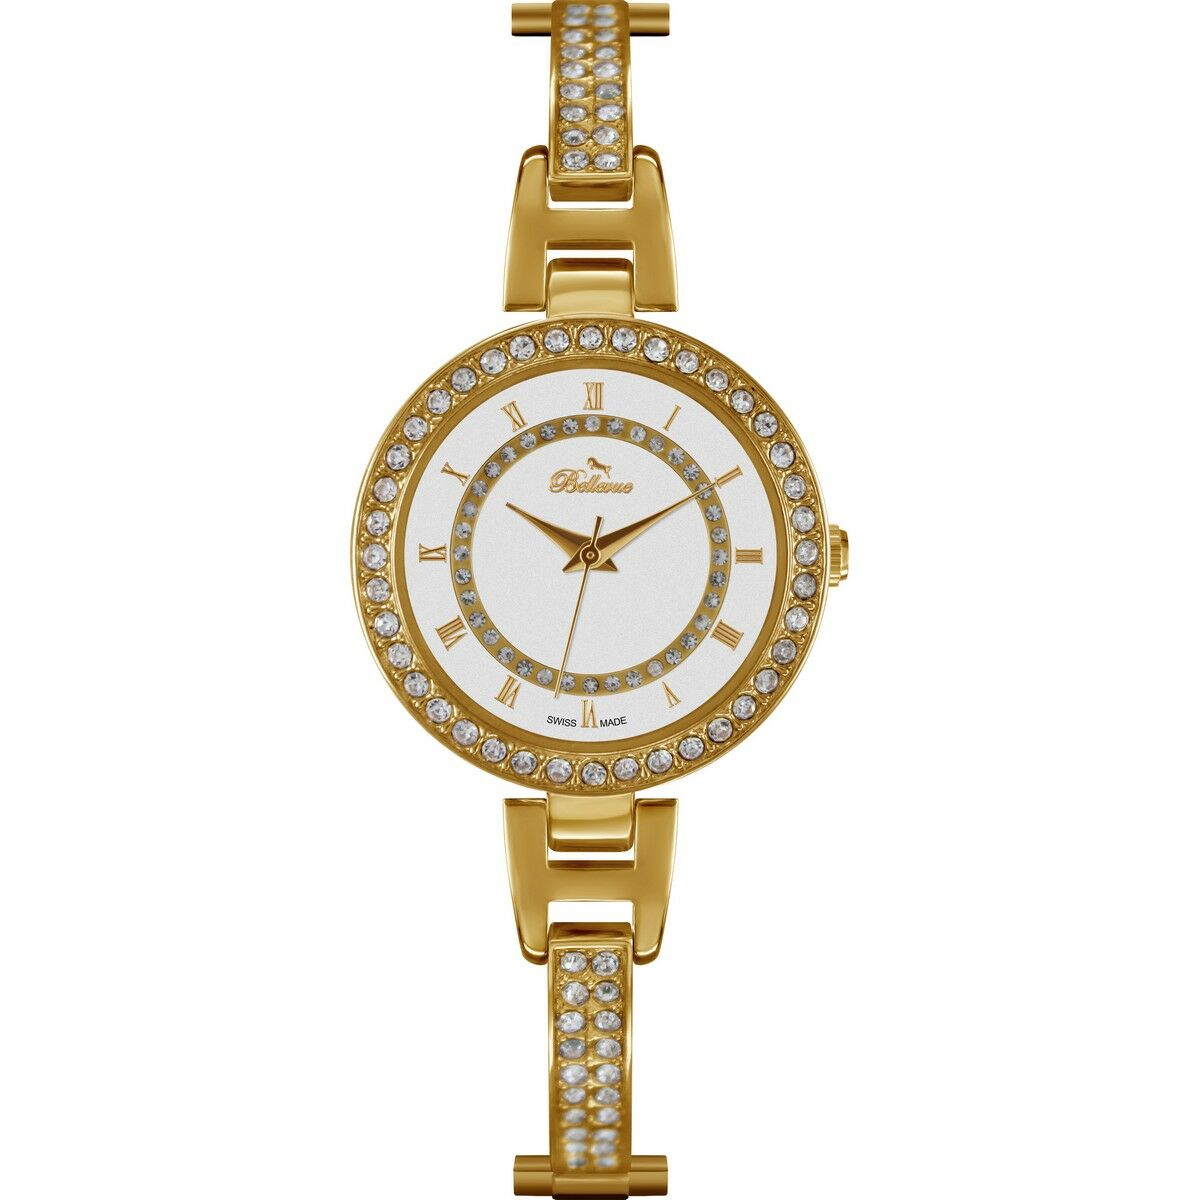 Horloge Dames Bellevue 30 mm (Refurbished A)